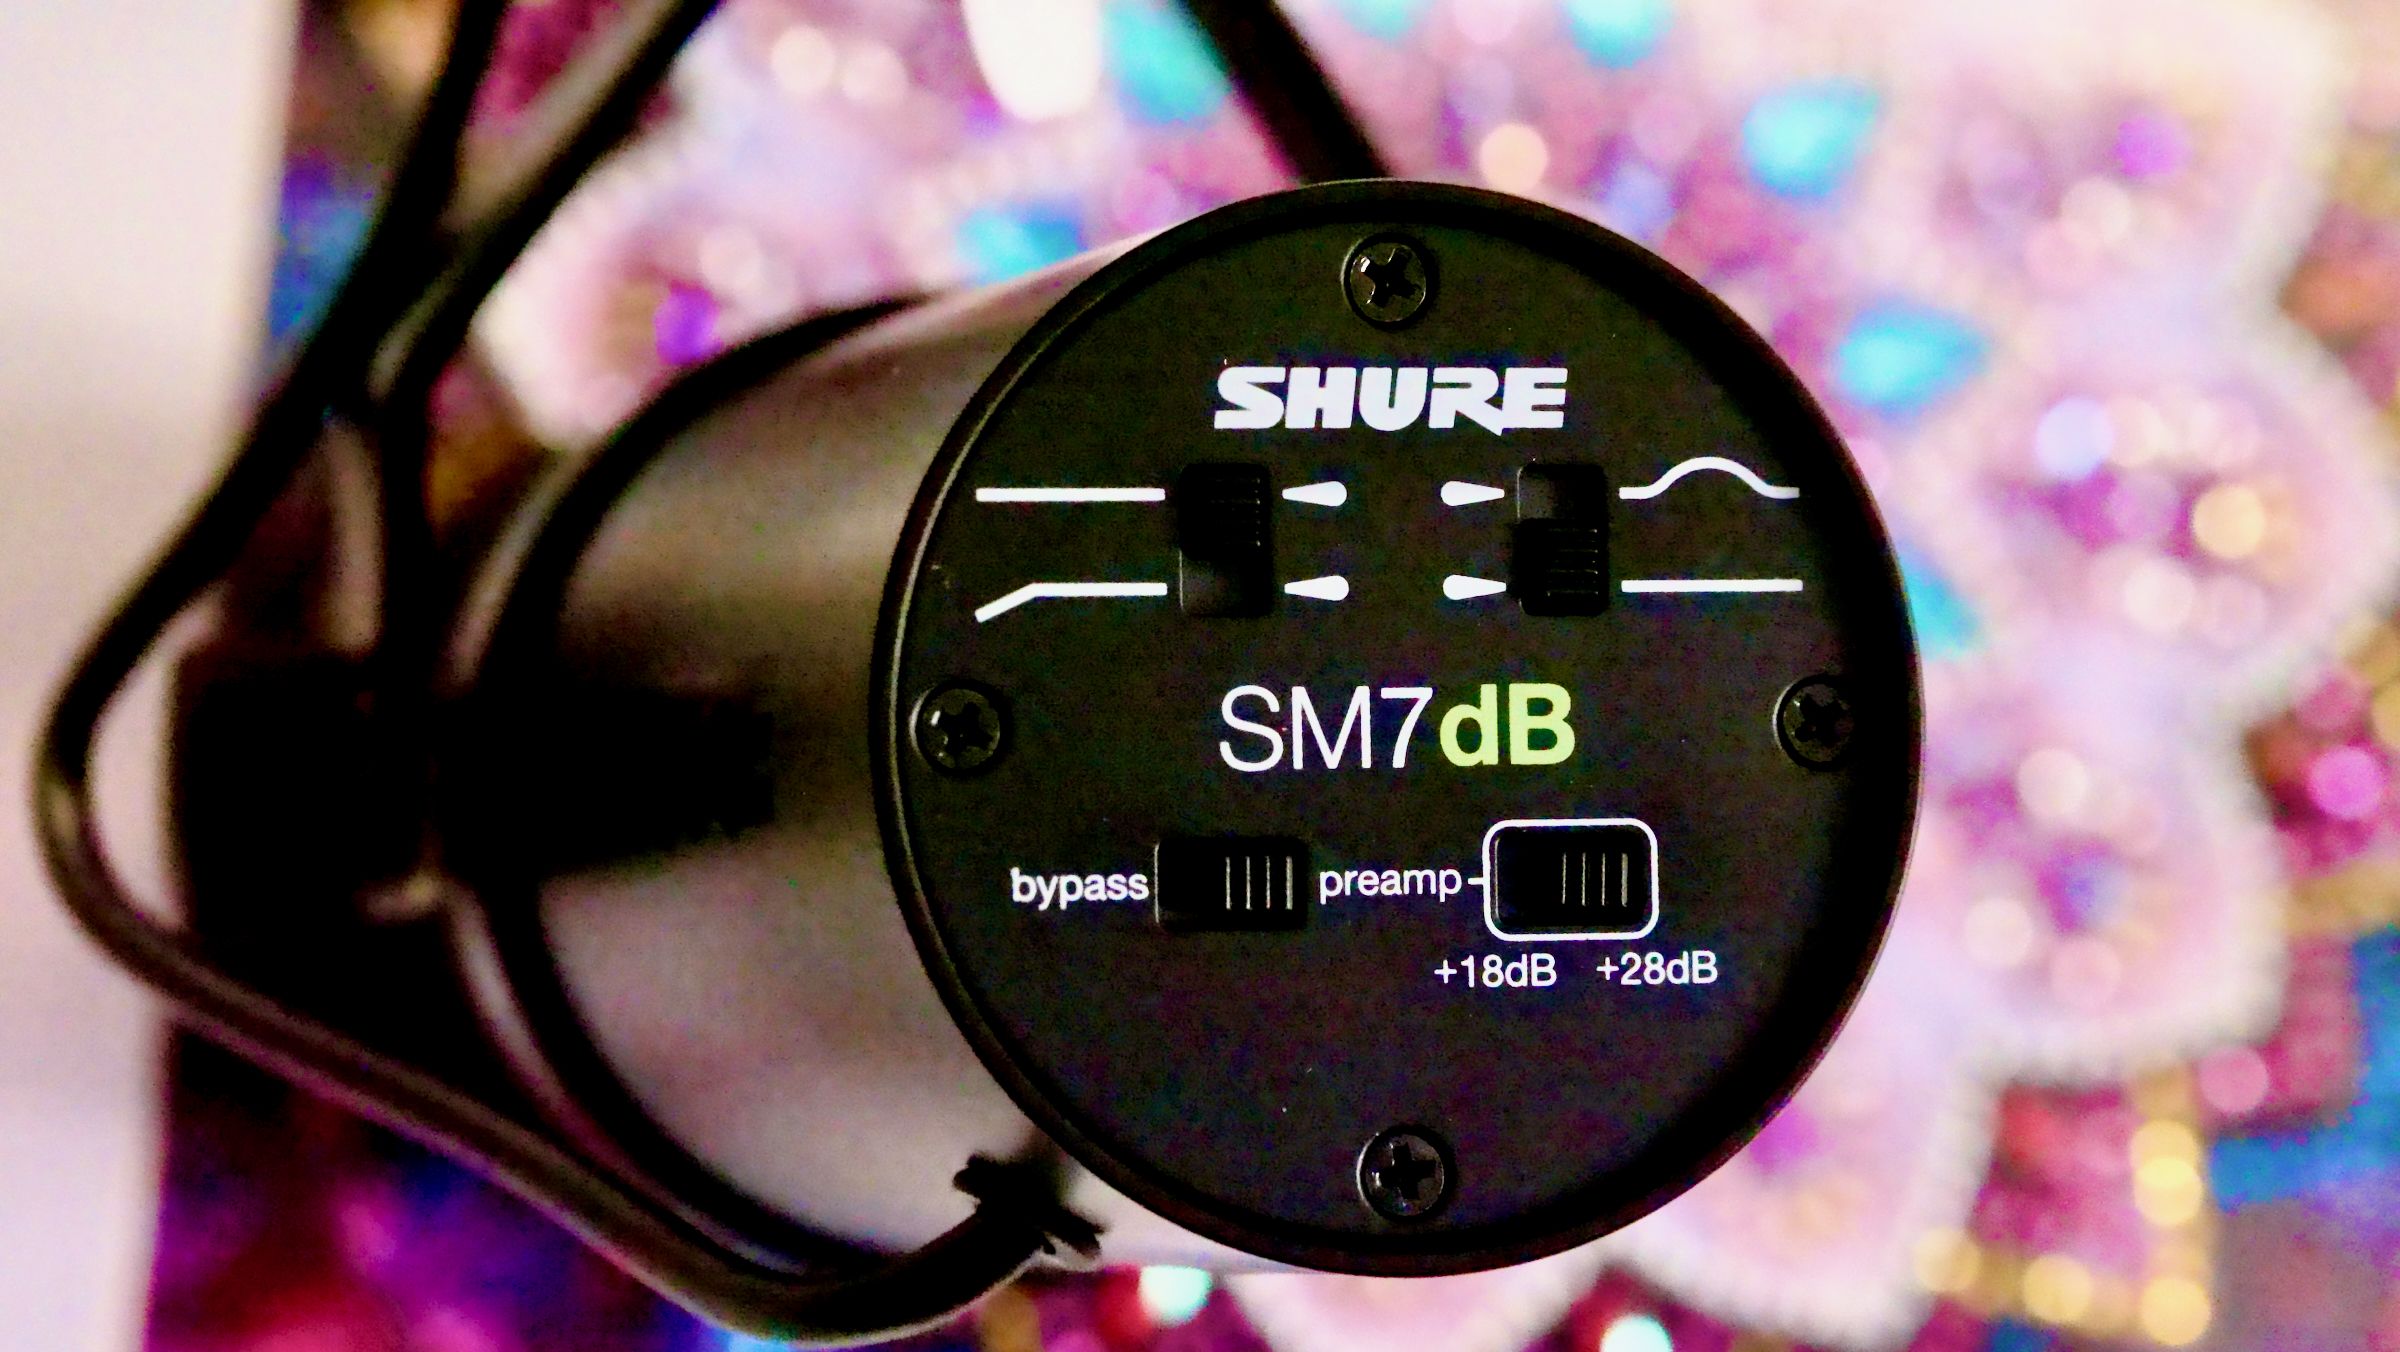 amazon, he probado el shure sm7db, el micro de la mayoría de streamers mejorado